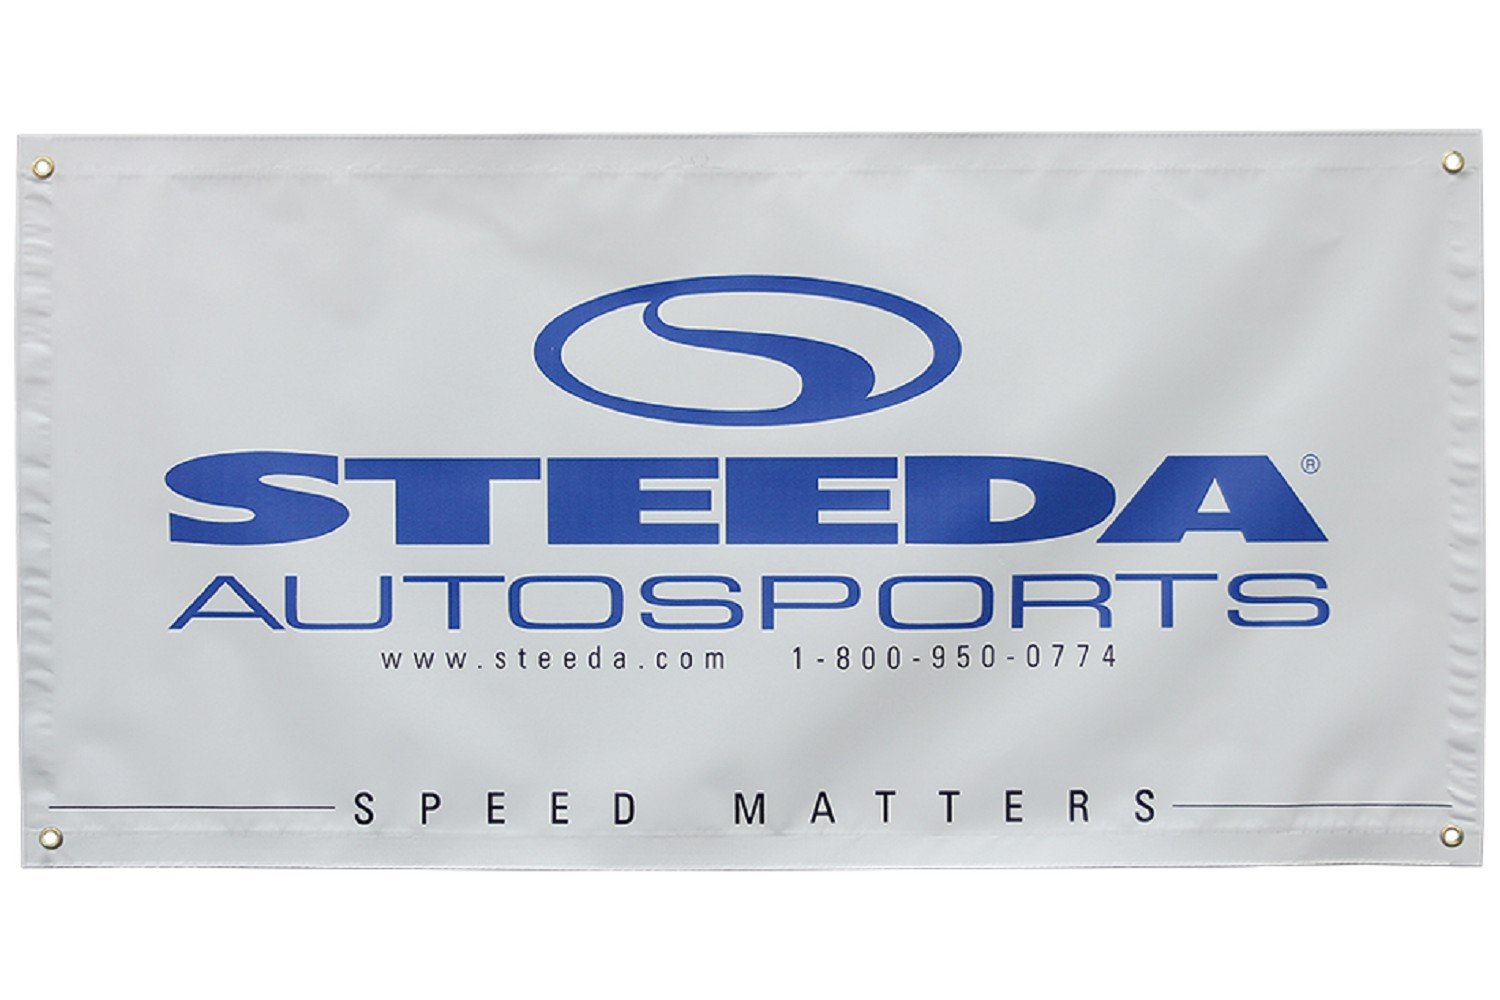 Steeda Autosports műhely szalaghirdetés